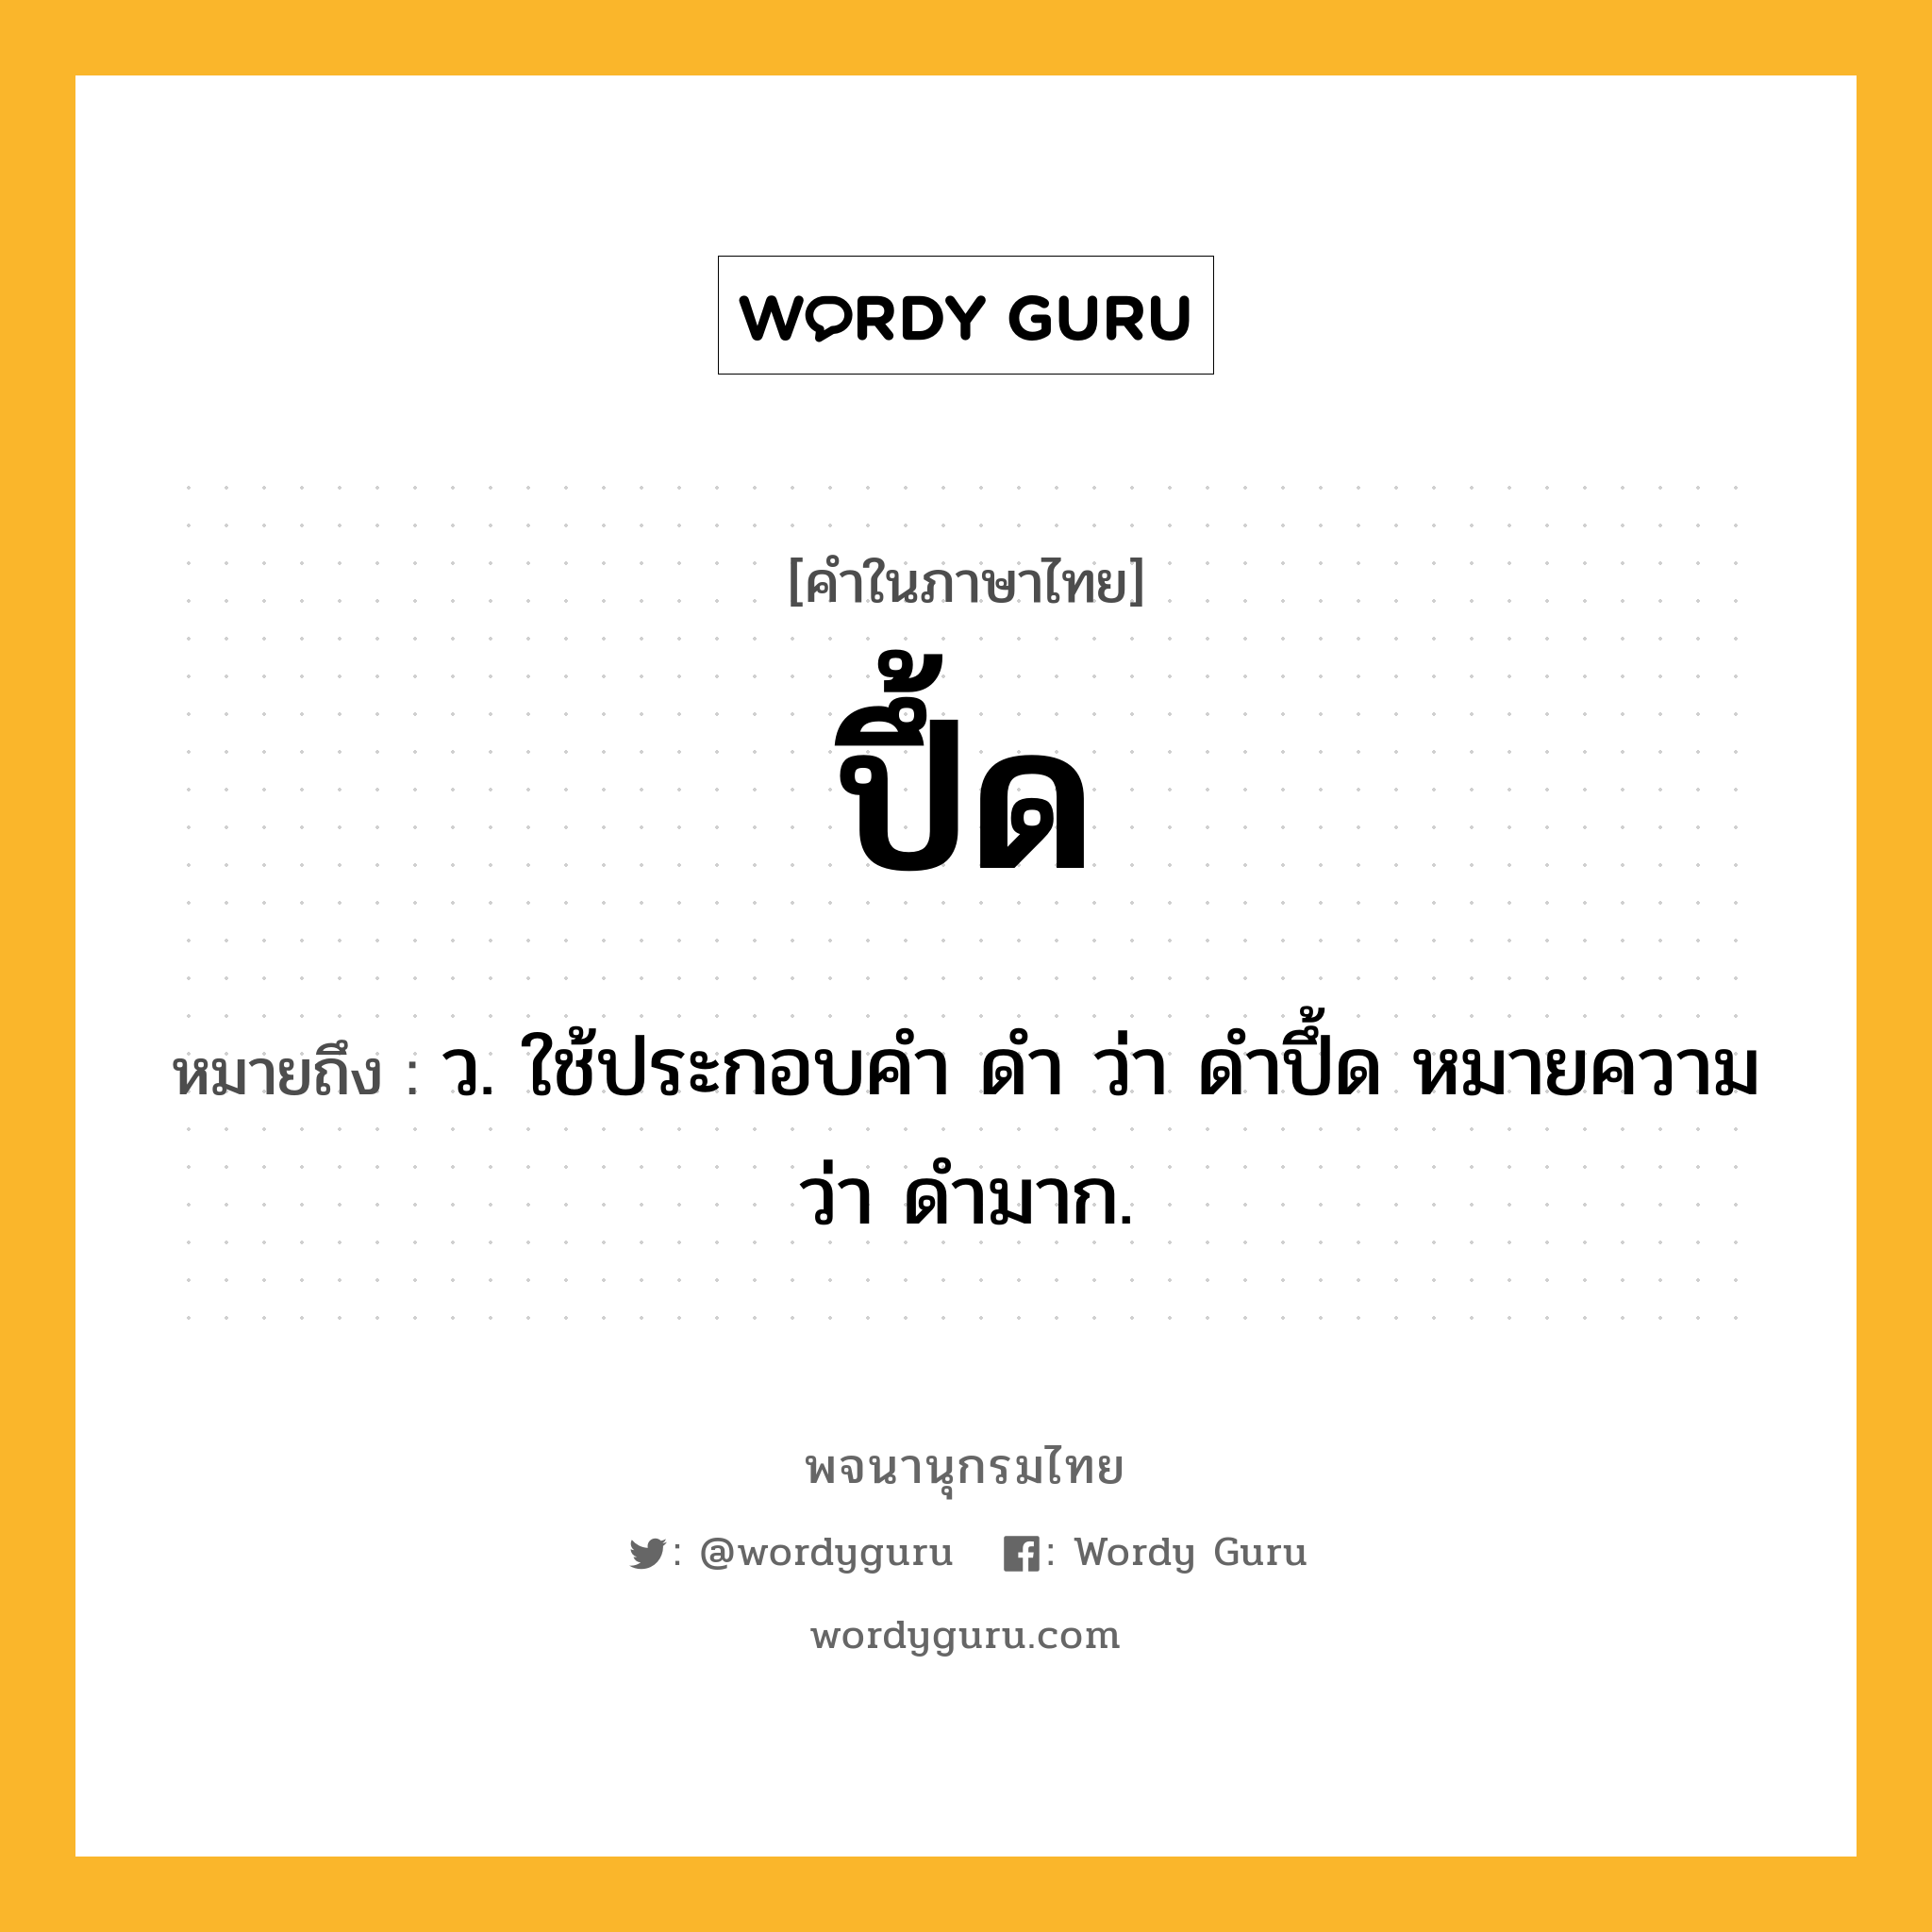 ปึ้ด ความหมาย หมายถึงอะไร?, คำในภาษาไทย ปึ้ด หมายถึง ว. ใช้ประกอบคํา ดํา ว่า ดําปึ้ด หมายความว่า ดํามาก.